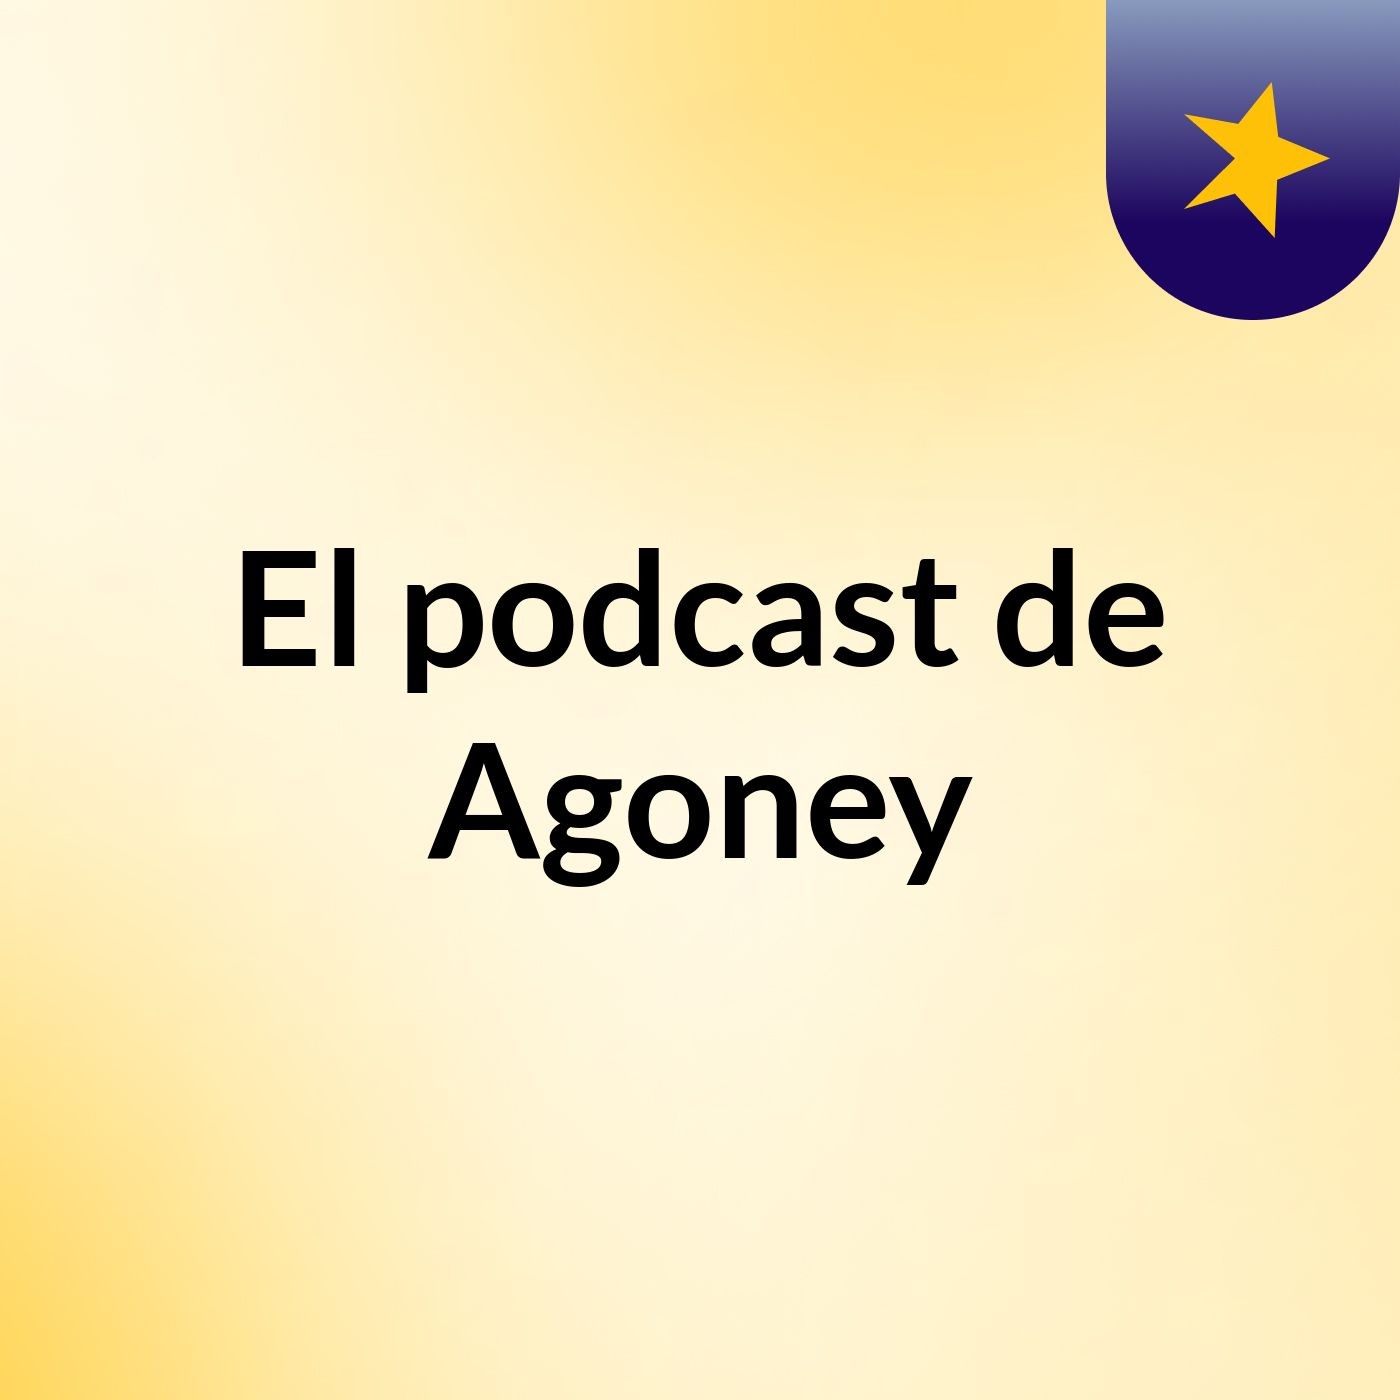 El podcast de Agoney